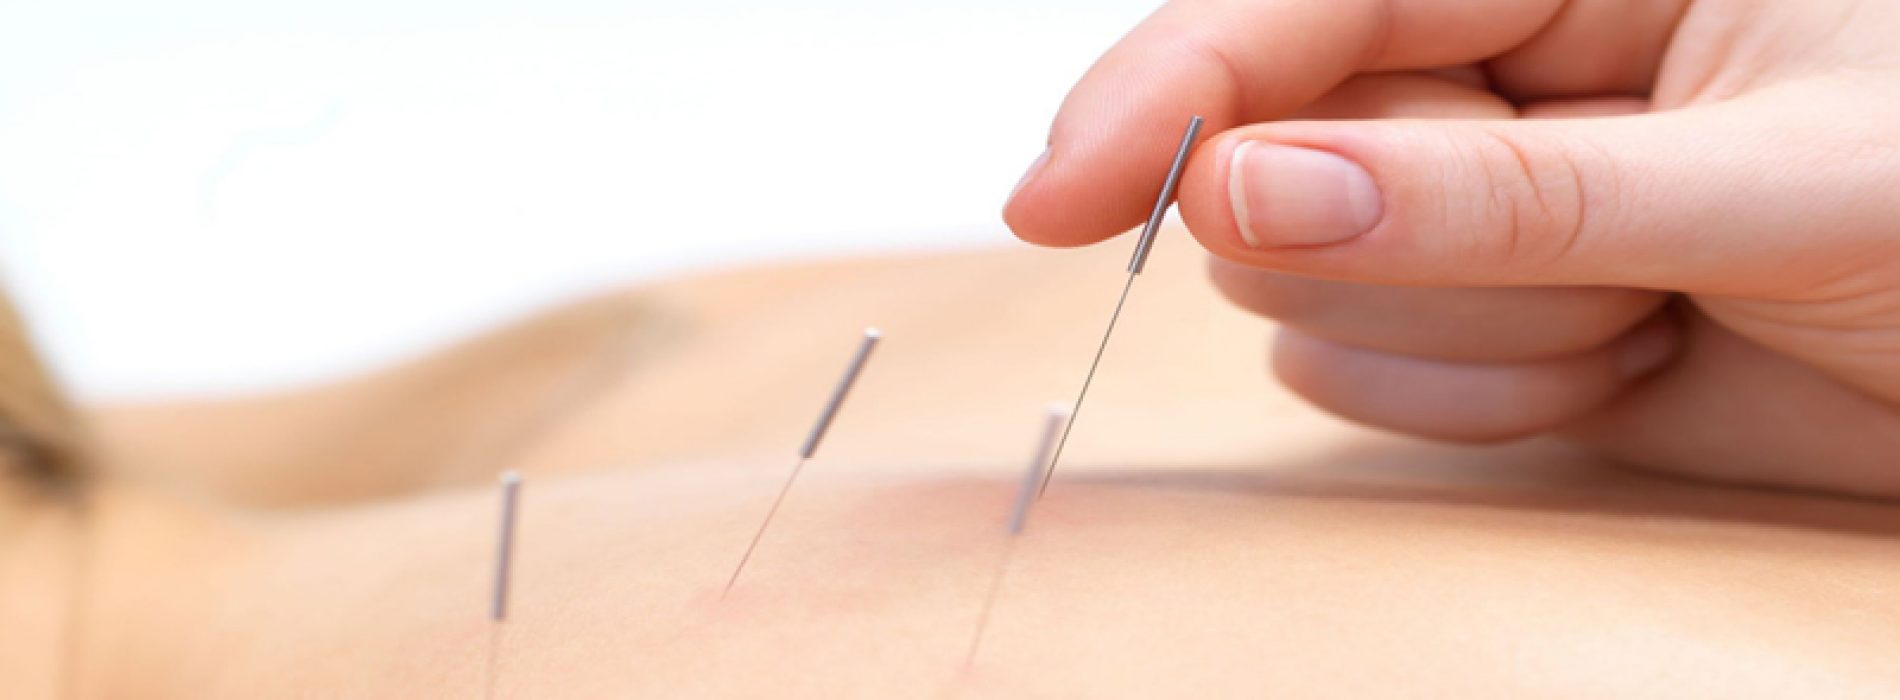 Heeft u voordat u naar pijnmedicatie grijpt al eens nagedacht over acupunctuur?